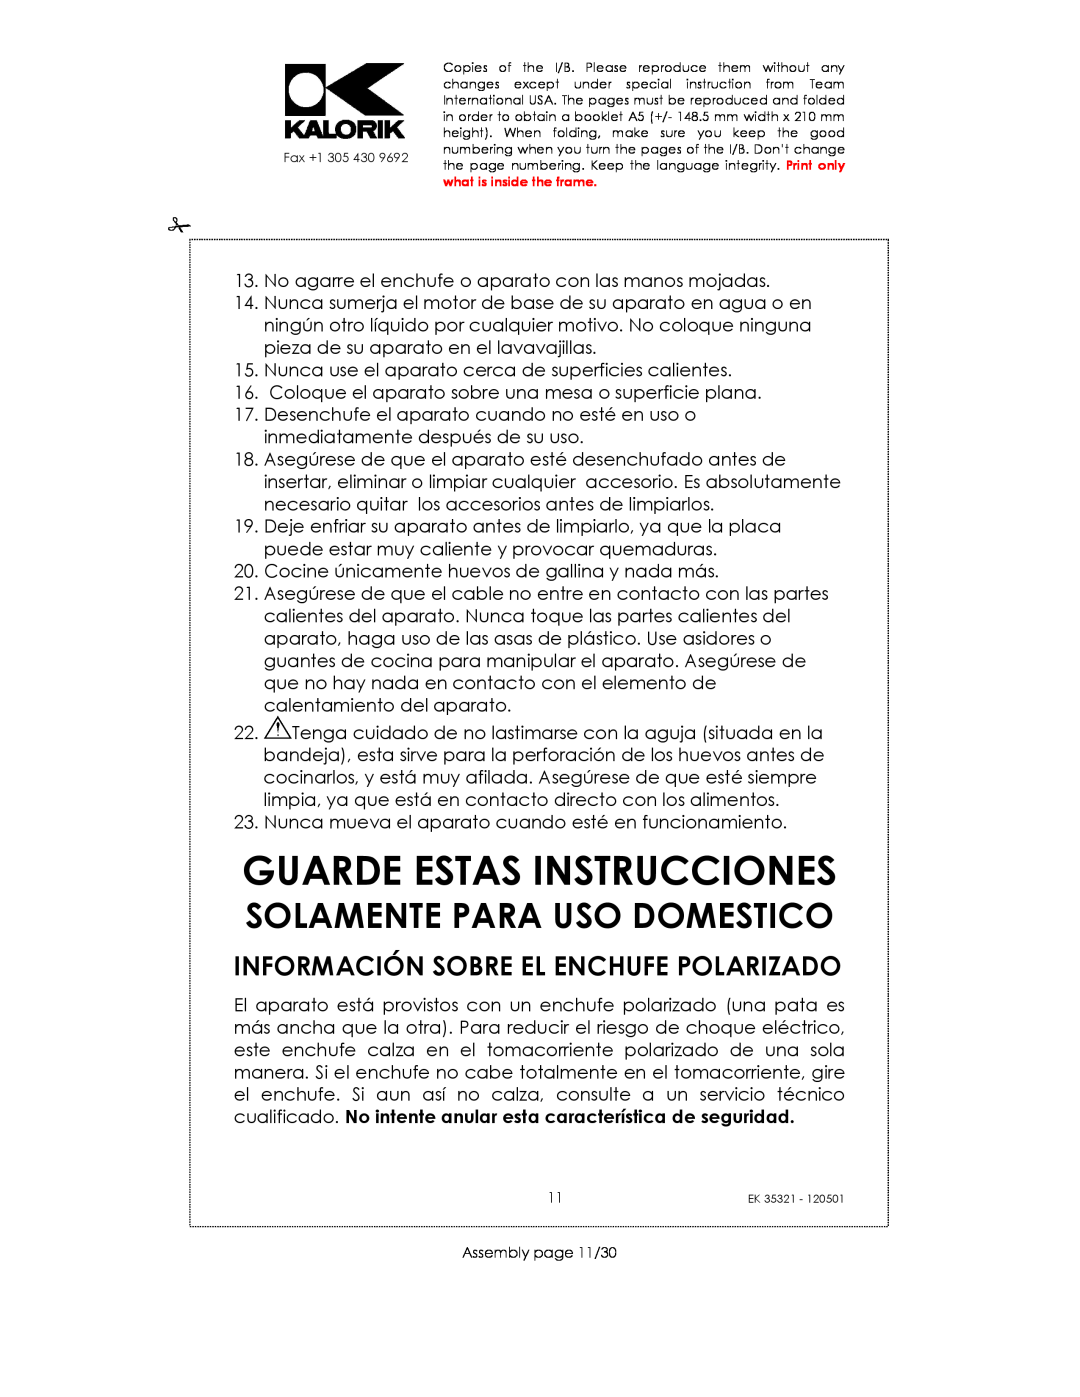 Kalorik EK35321 manual Guarde Estas Instrucciones, Información Sobre El Enchufe Polarizado, Solamente Para Uso Domestico 